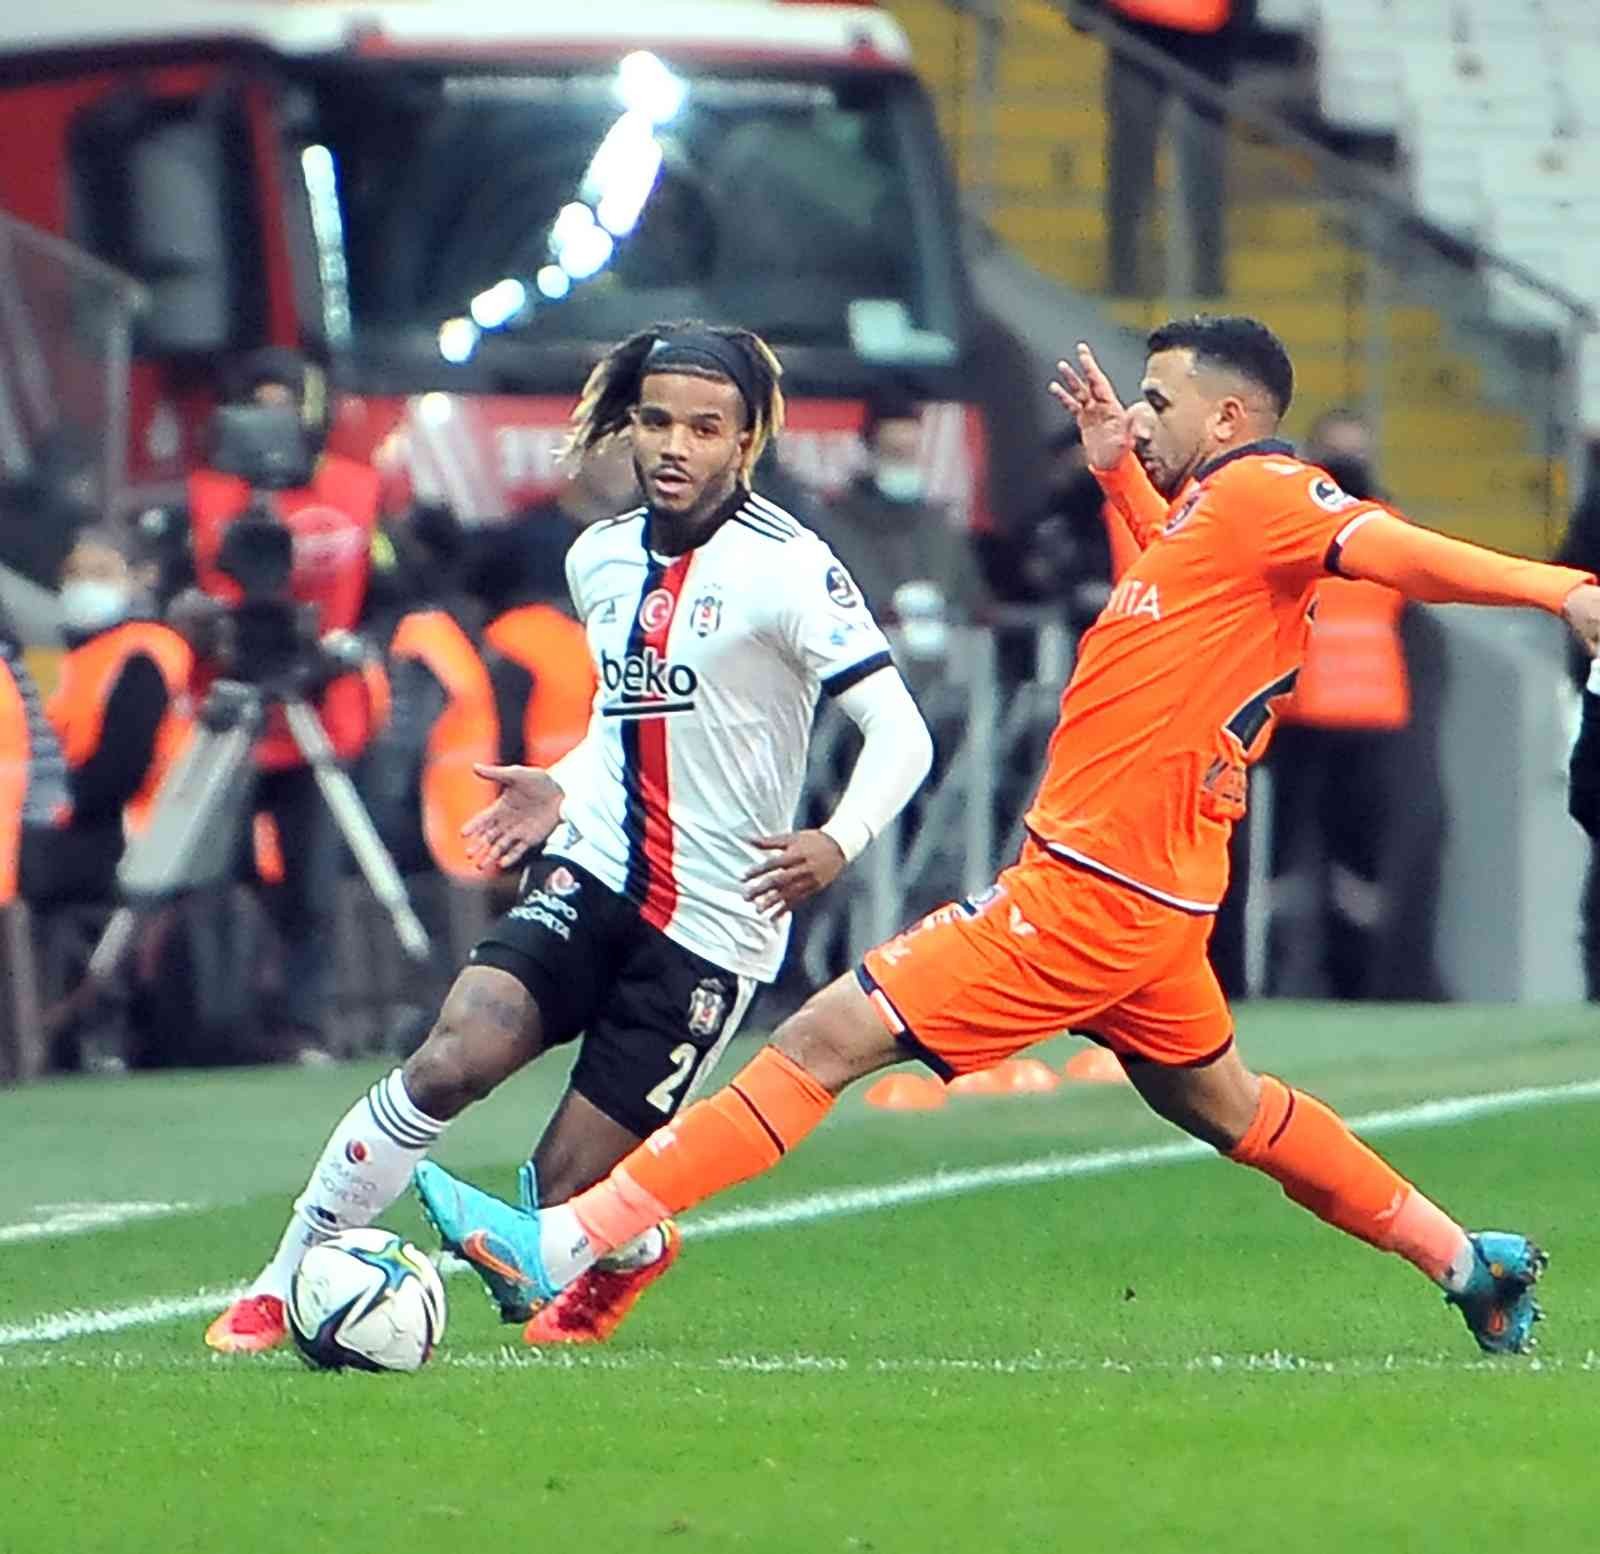 Spor Toto Süper Lig: Beşiktaş: 0 - Medipol Başakşehir: 0 (Maç devam ediyor) #istanbul